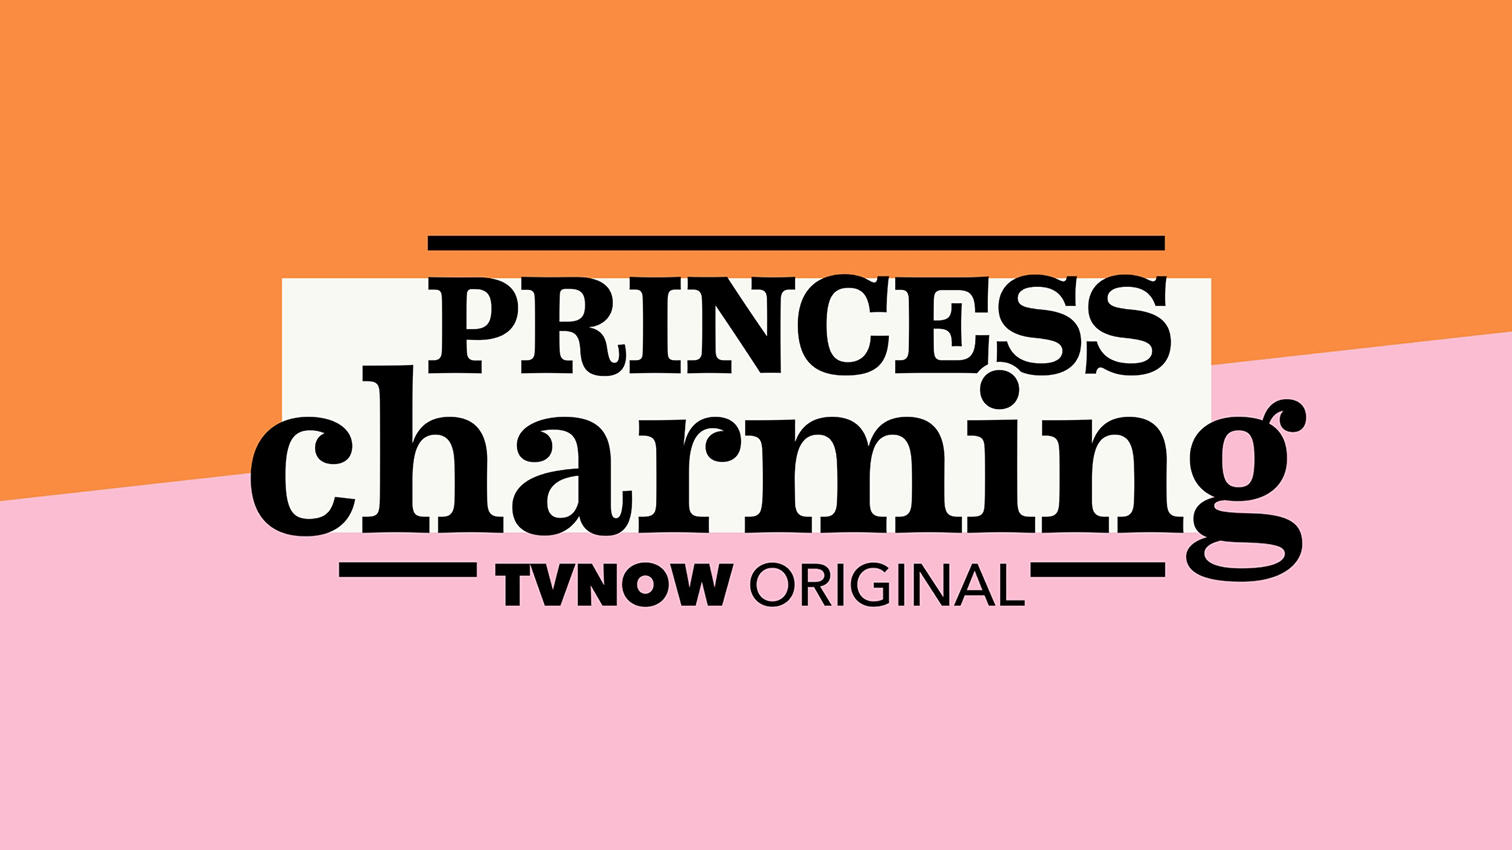 Erst der Prince, jetzt eine Princess! TVNOW entwickelt mit "Princess Charming" das Erfolgs-Format weiter.Die Verwendung des sendungsbezogenen Materials ist nur mit dem Hinweis und Verlinkung auf TVNOW gestattet.